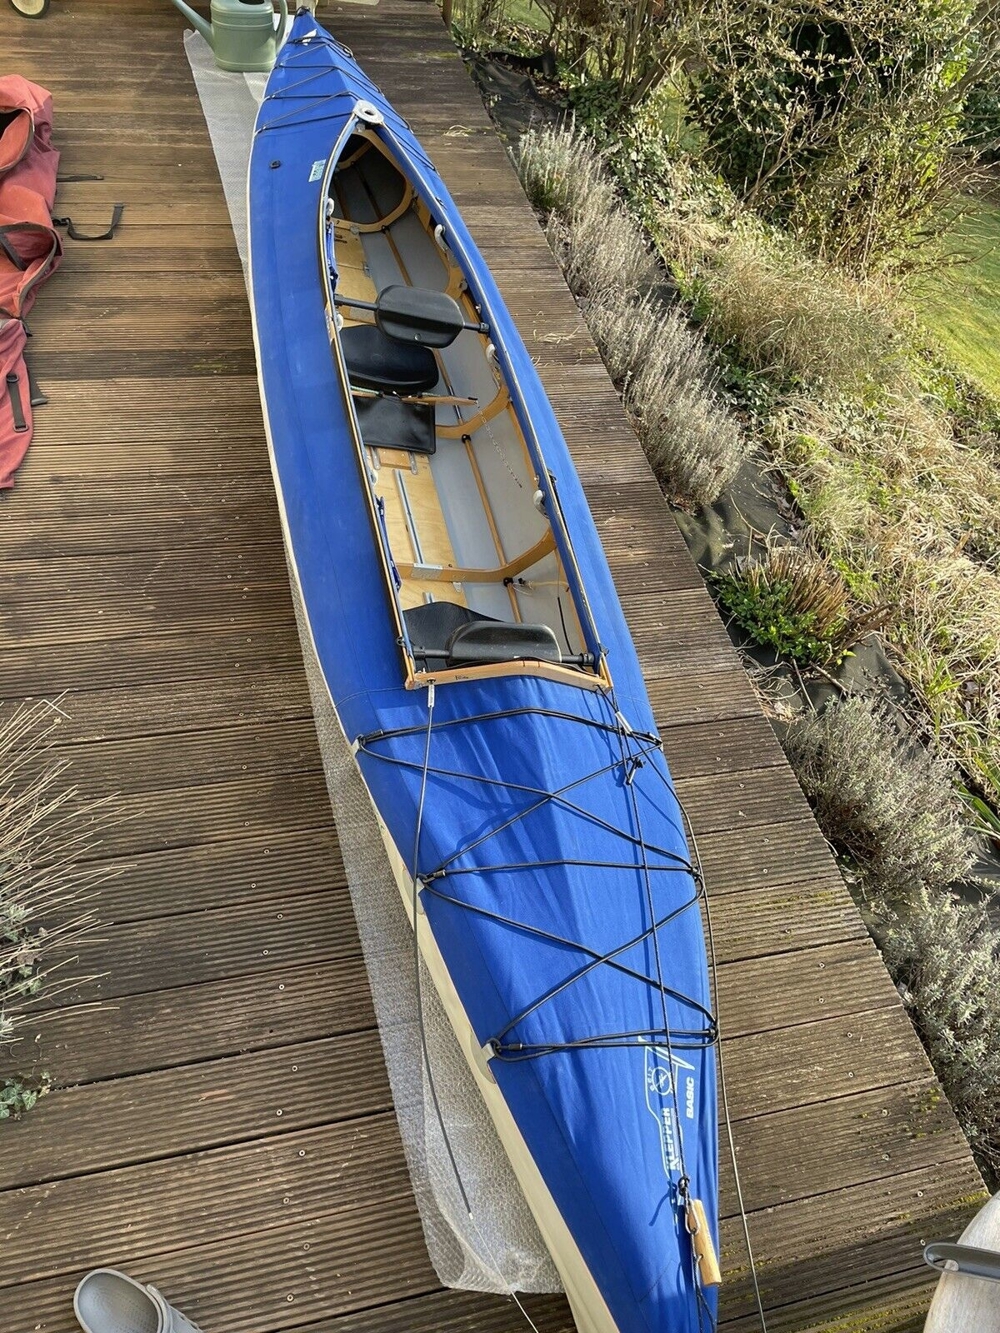 Faltboot Klepper Aerius 2 basic in hervoragendem Zustand